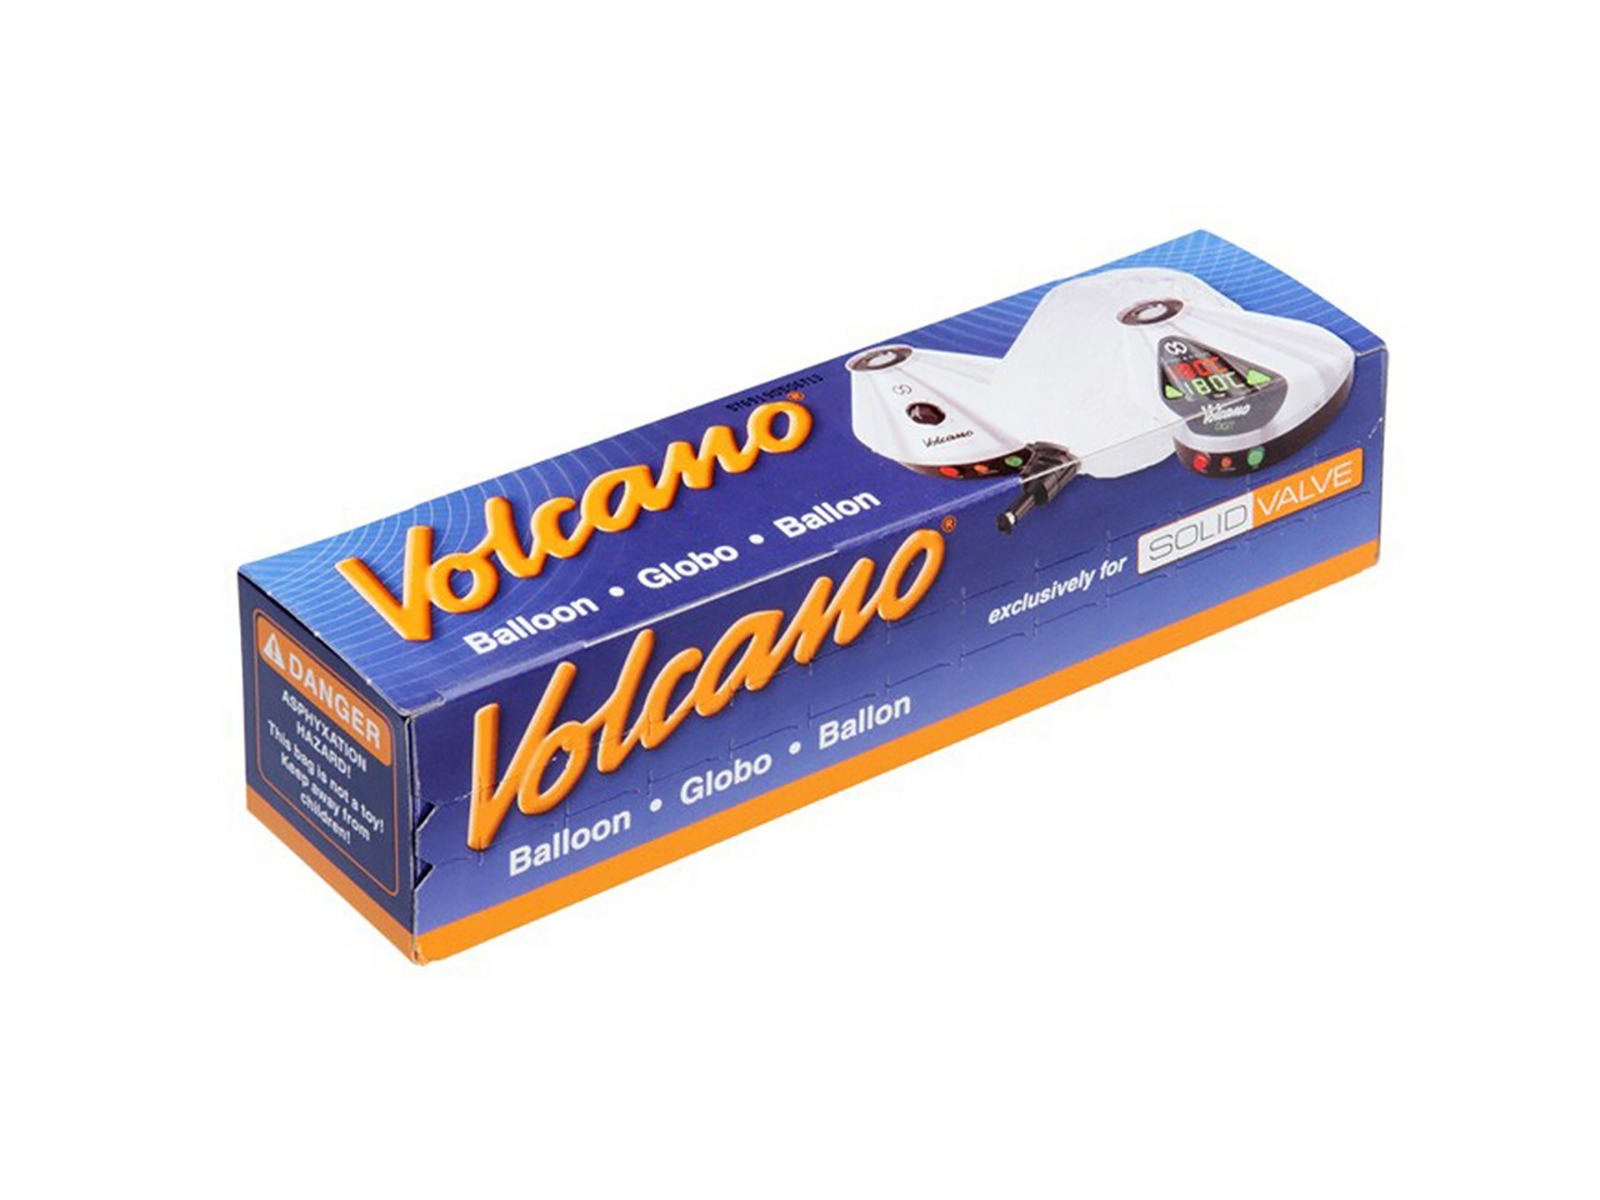 Bolsa / Globo de repuesto Volcano Solid Valve (3m)